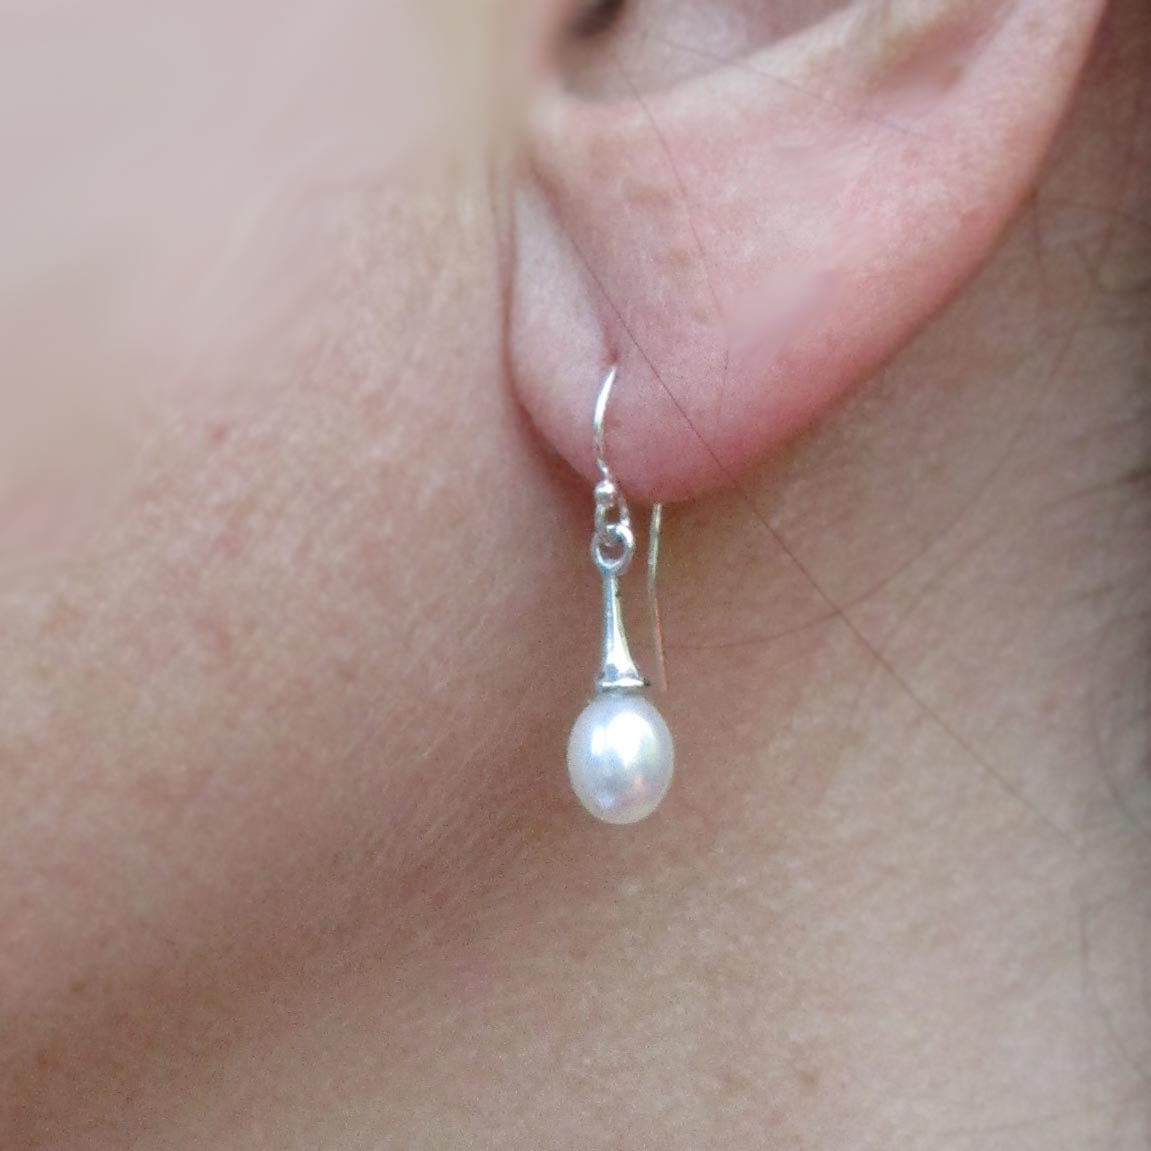 14 Karat Gold and White Freshwater Teardrop Pearl Hook Earrings - Luxe Design Jewellery